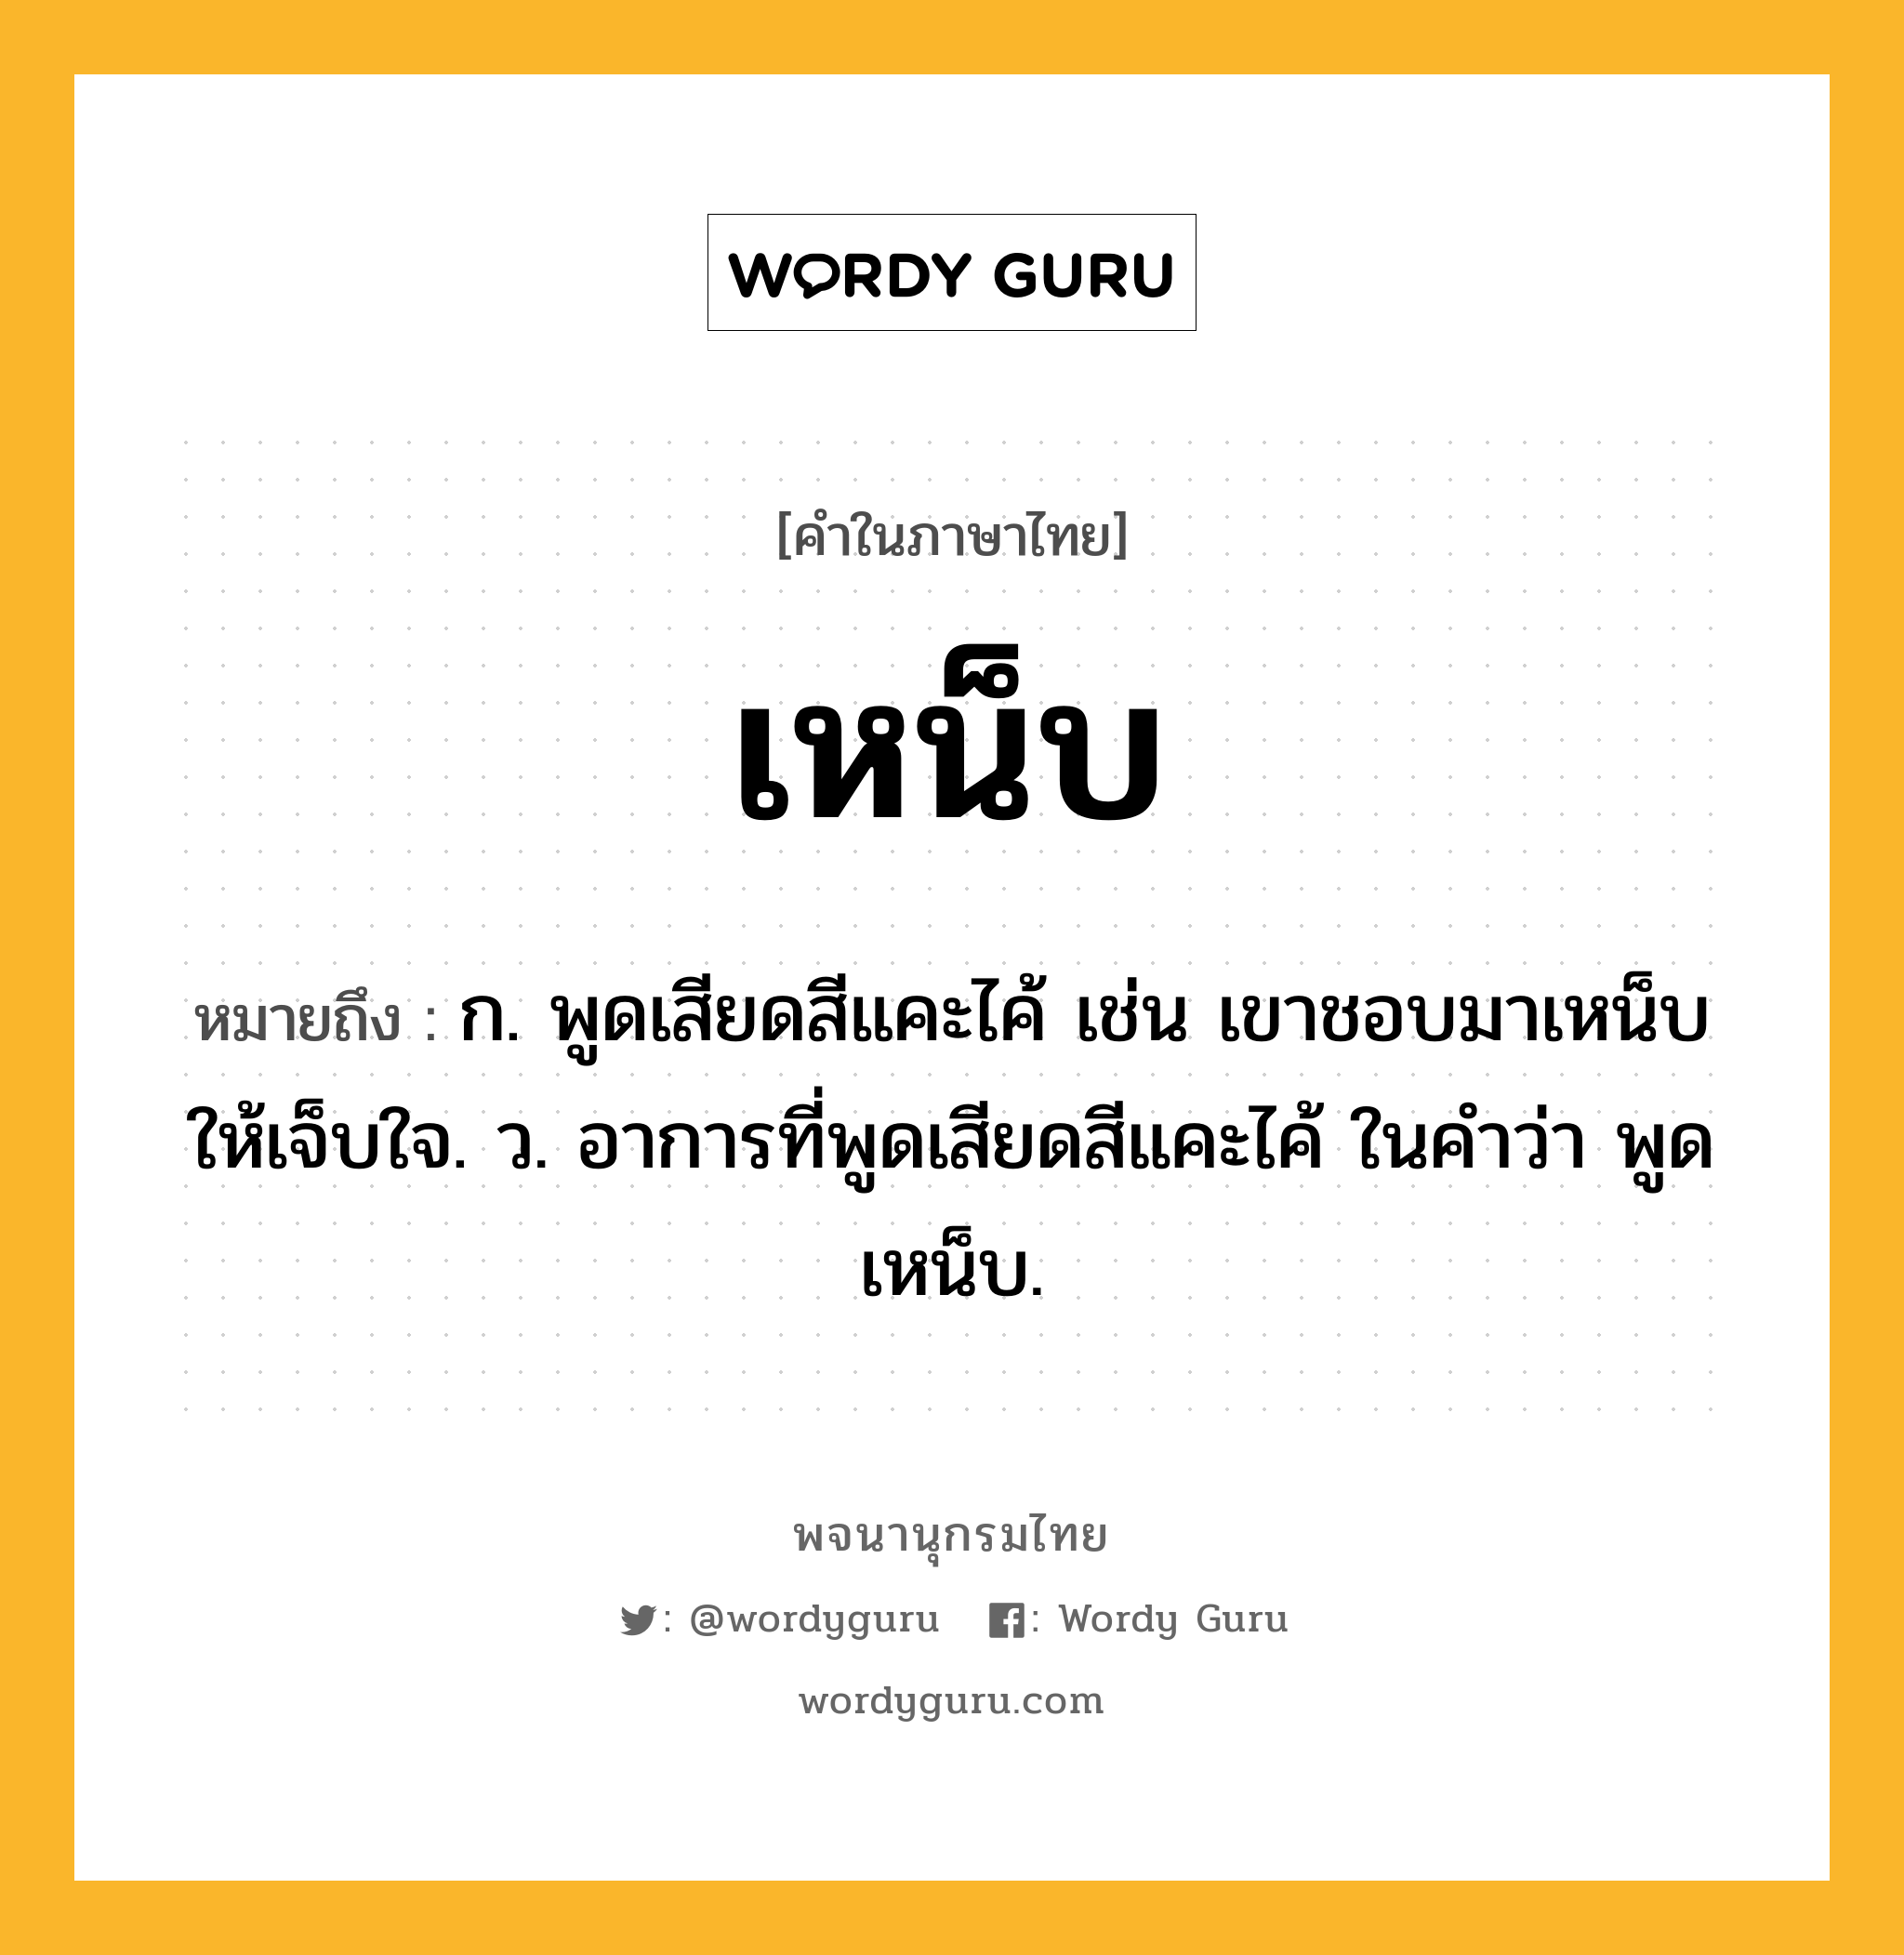 เหน็บ หมายถึงอะไร?, คำในภาษาไทย เหน็บ หมายถึง ก. พูดเสียดสีแคะไค้ เช่น เขาชอบมาเหน็บให้เจ็บใจ. ว. อาการที่พูดเสียดสีแคะไค้ ในคำว่า พูดเหน็บ.